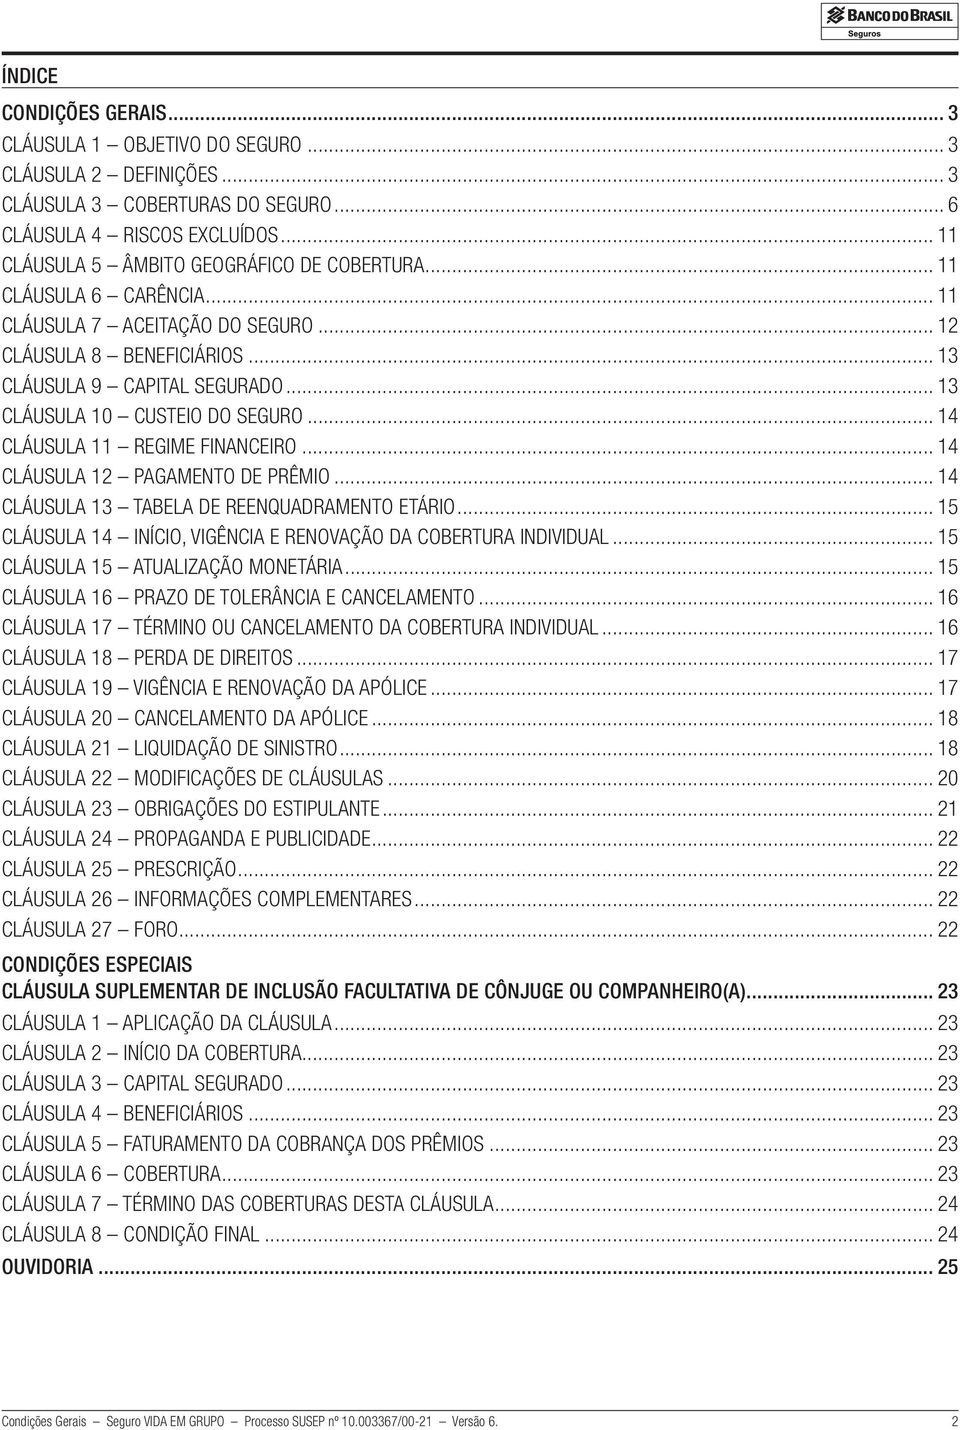 .. 14 CLÁUSULA 12 PAGAMENTO DE PRÊMIO... 14 CLÁUSULA 13 TABELA DE REENQUADRAMENTO ETÁRIO... 15 CLÁUSULA 14 INÍCIO, VIGÊNCIA E RENOVAÇÃO DA COBERTURA INDIVIDUAL... 15 CLÁUSULA 15 ATUALIZAÇÃO MONETÁRIA.